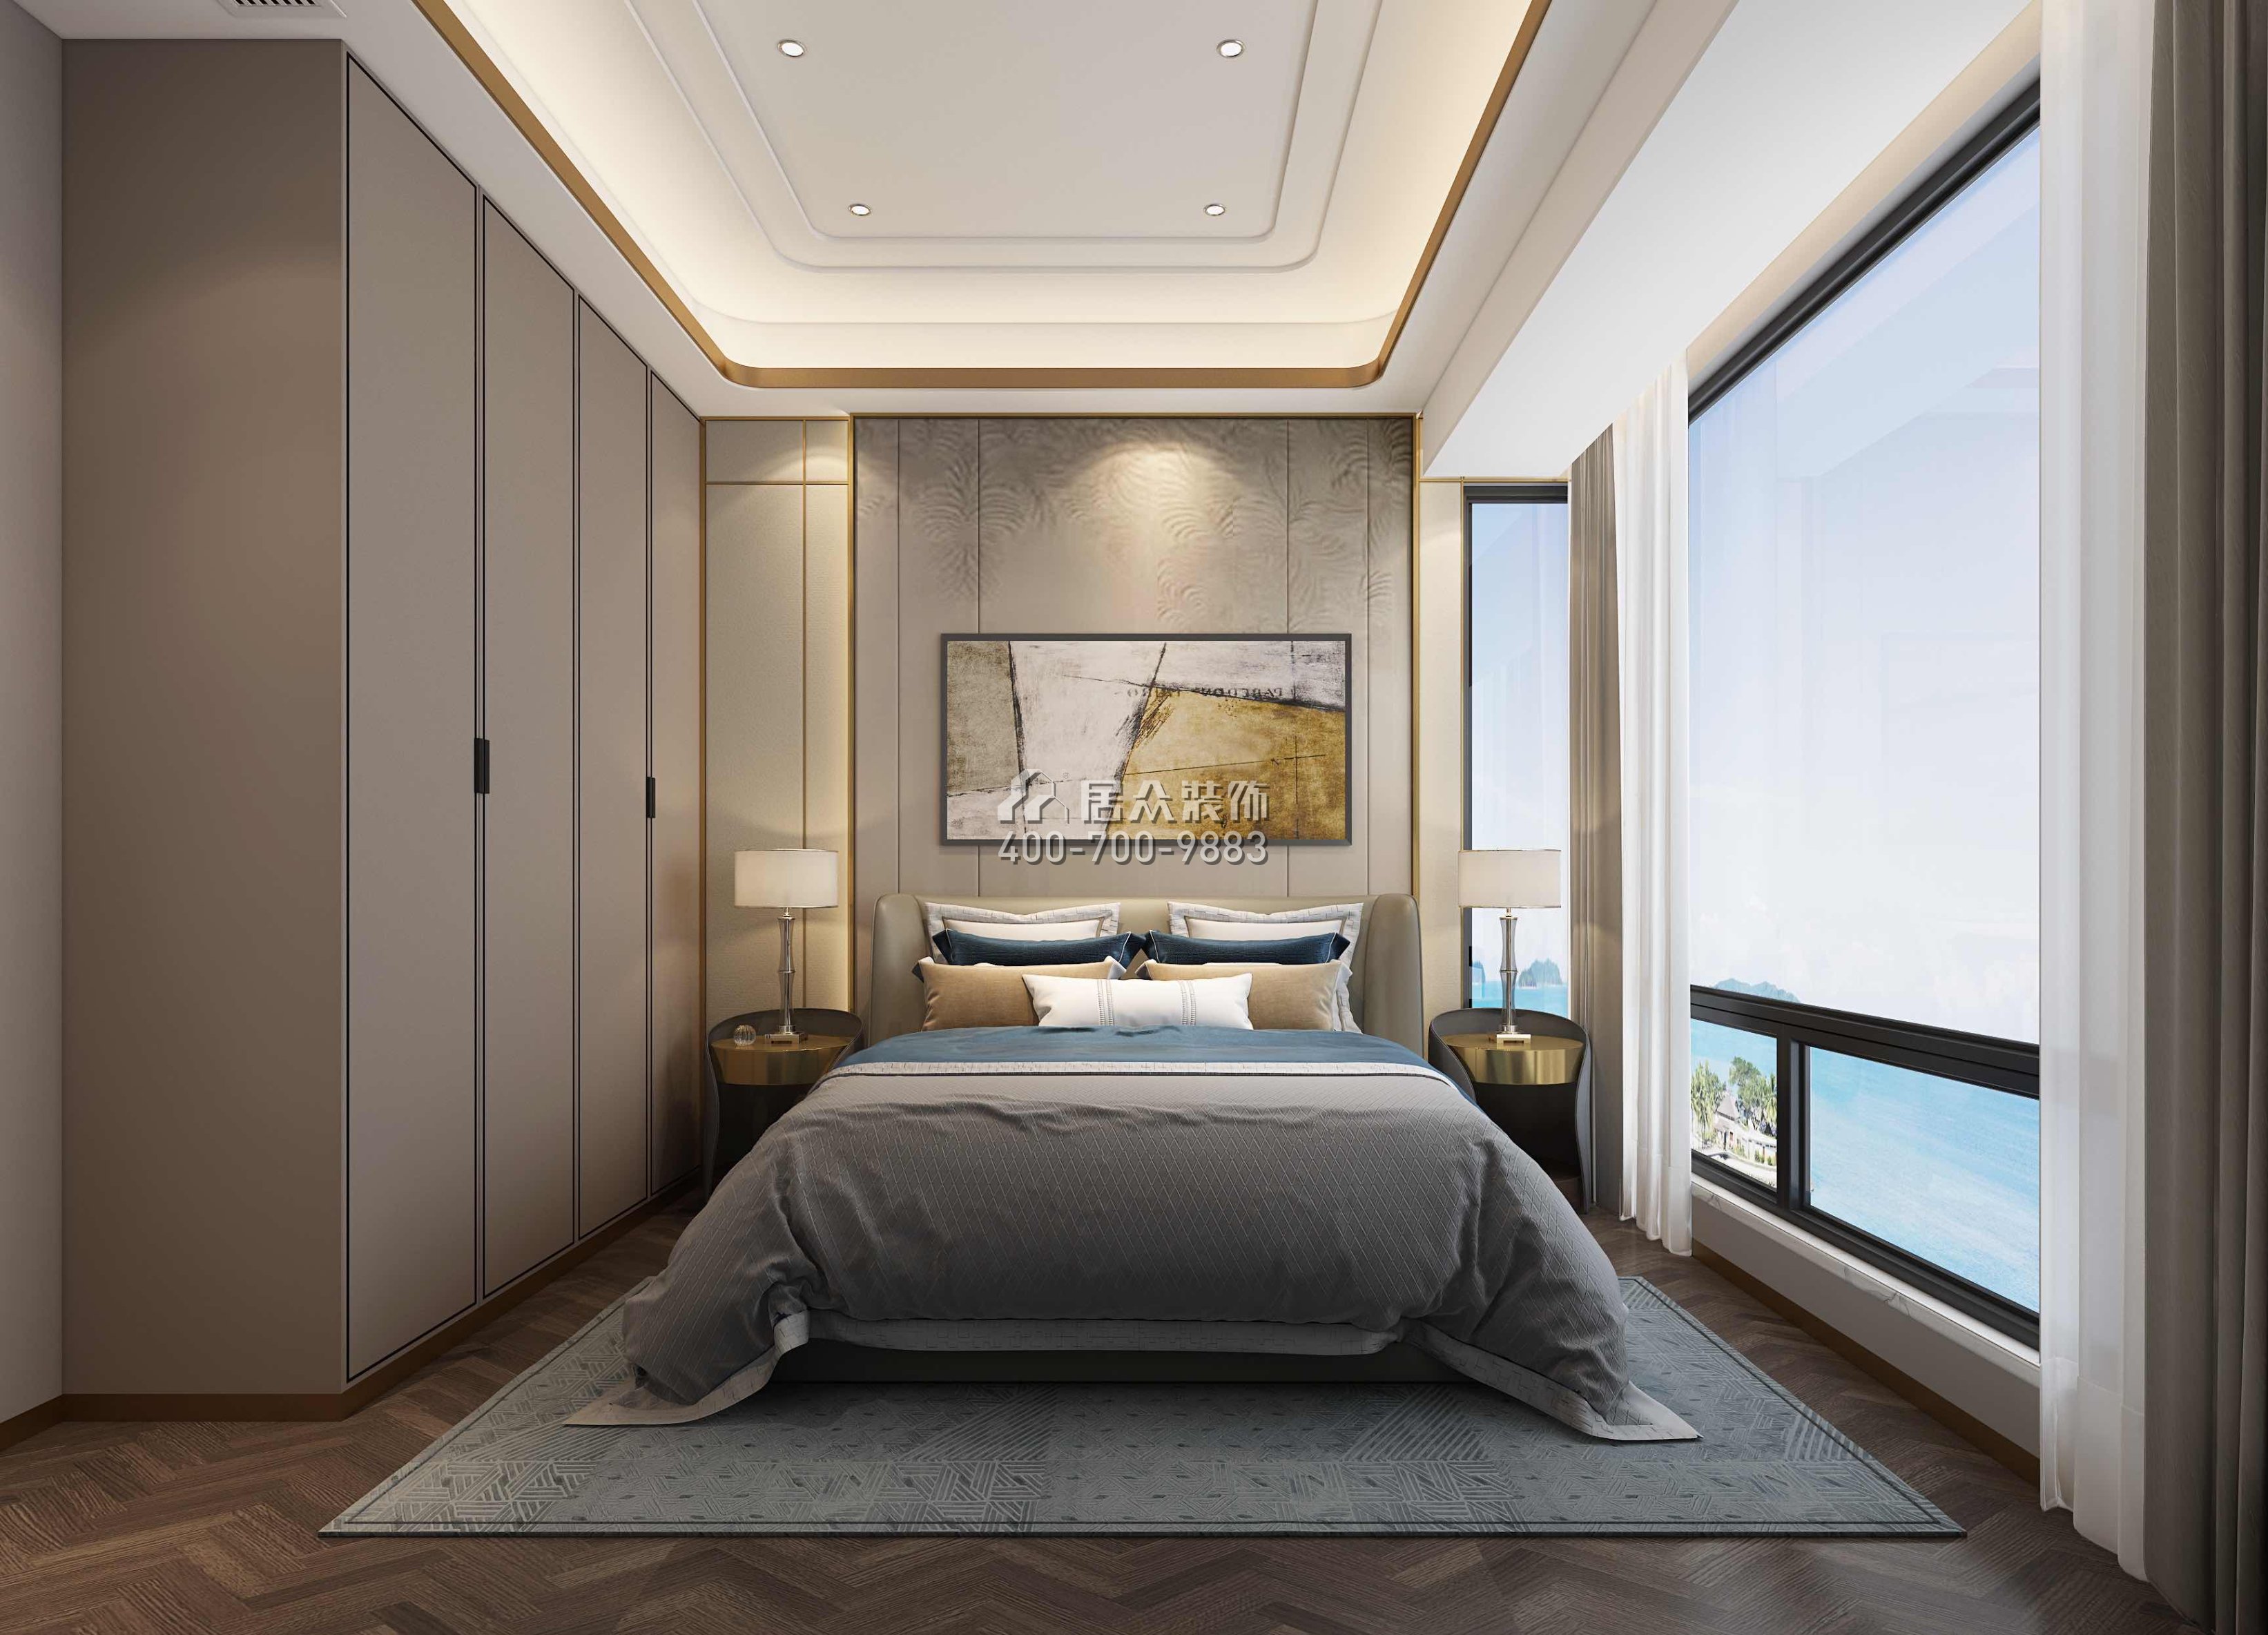 绿景红树湾壹号170平方米其他风格平层户型卧室装修效果图